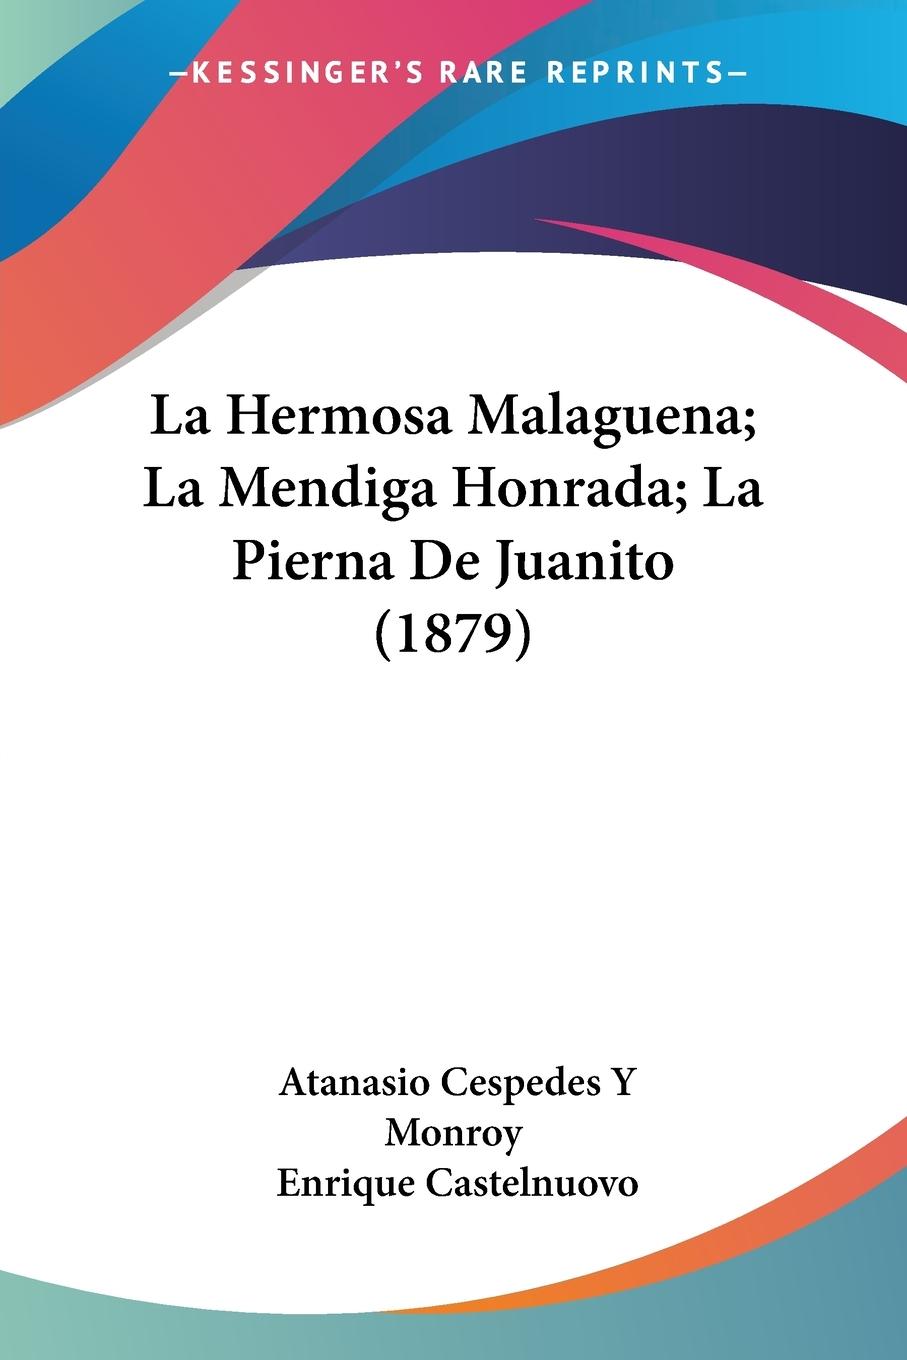 La Hermosa Malaguena; La Mendiga Honrada; La Pierna De Juanito (1879) - Monroy, Atanasio Cespedes Y Castelnuovo, Enrique